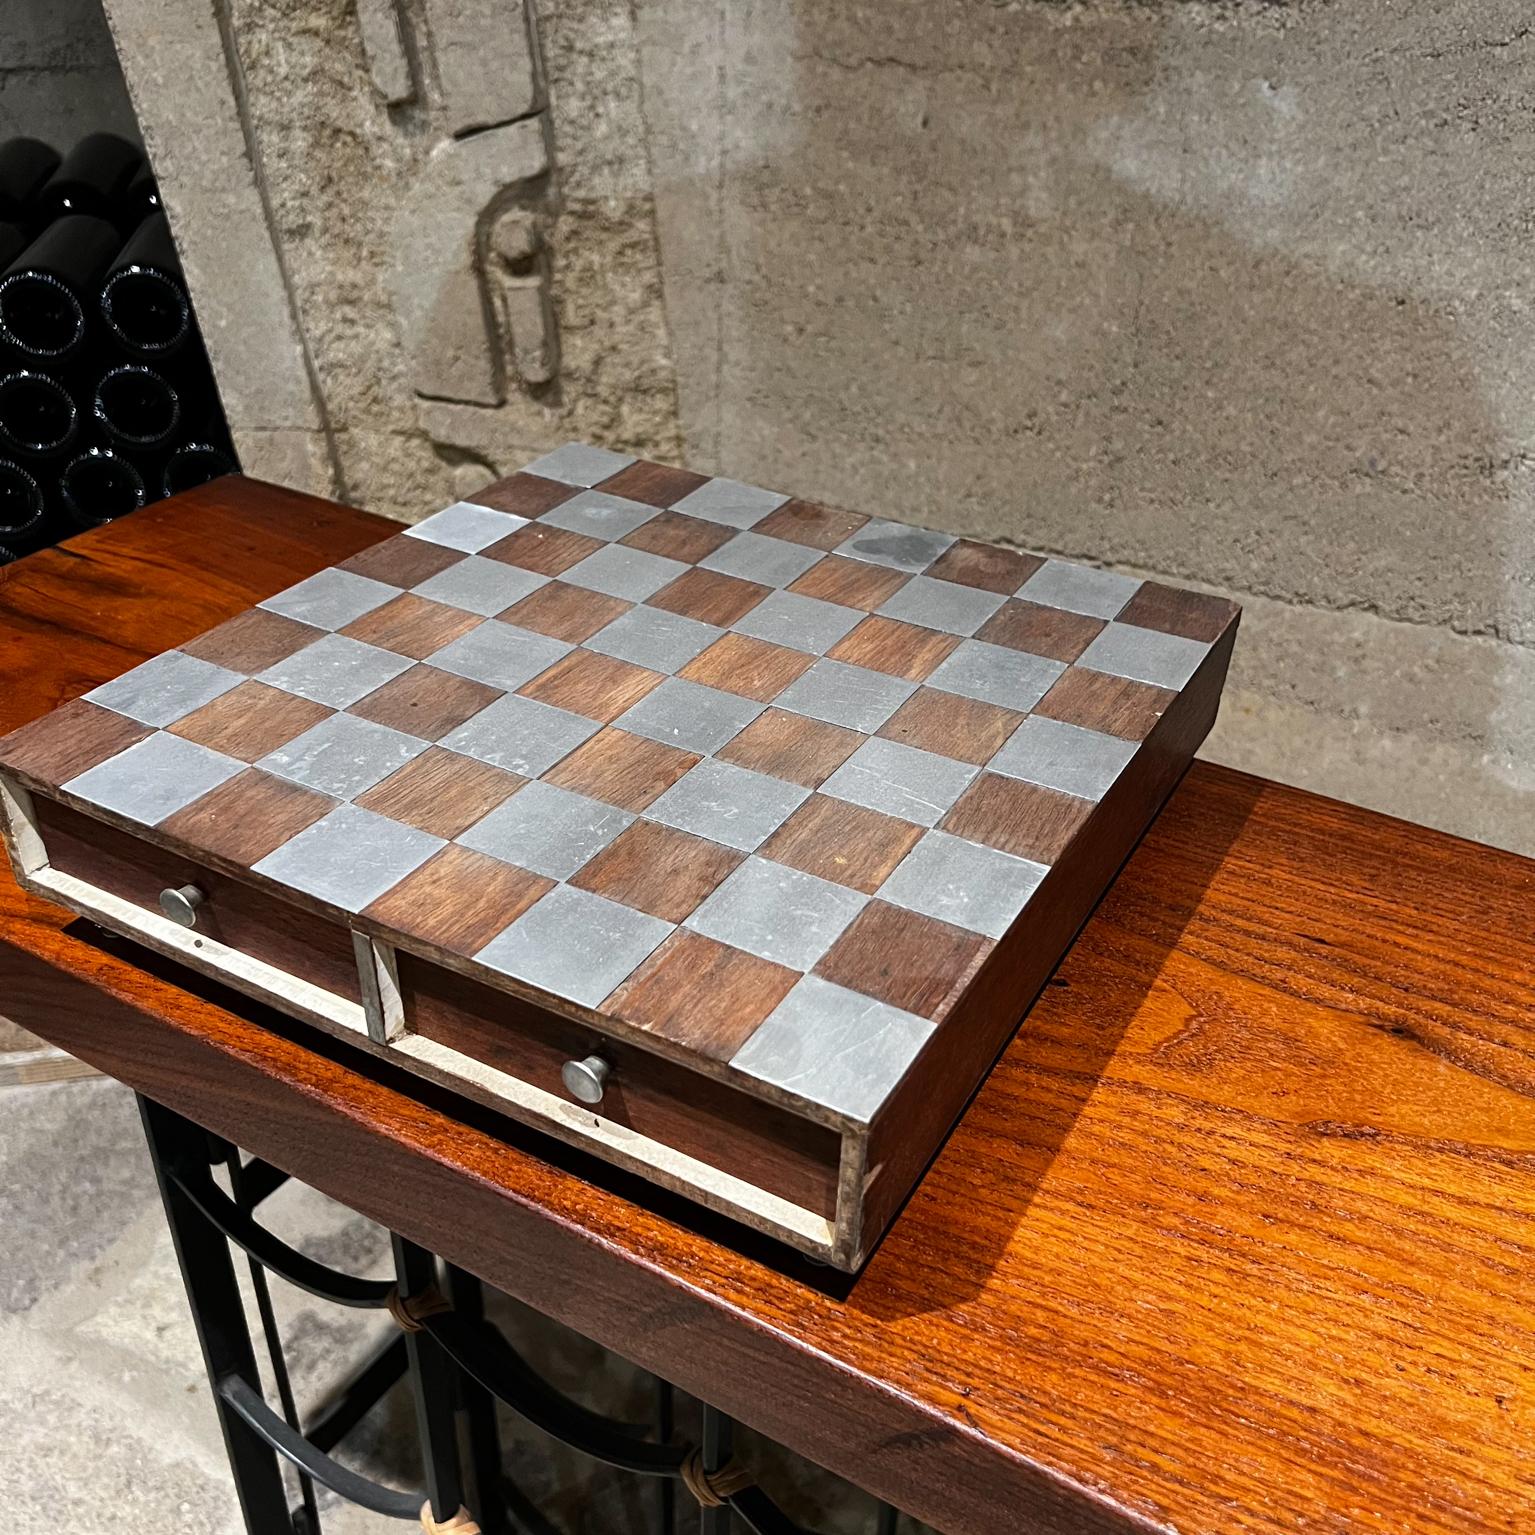 1960er Jahre Modernes Schachspiel aus Aluminium und Walnussholz 
Unmarkiert
Gebrauchter Vintage-Zustand. Einige Stücke sind restauriert worden. 
Sehen Sie sich bitte alle Bilder an.
Maße: 3 hoch x 12 x 12,25.